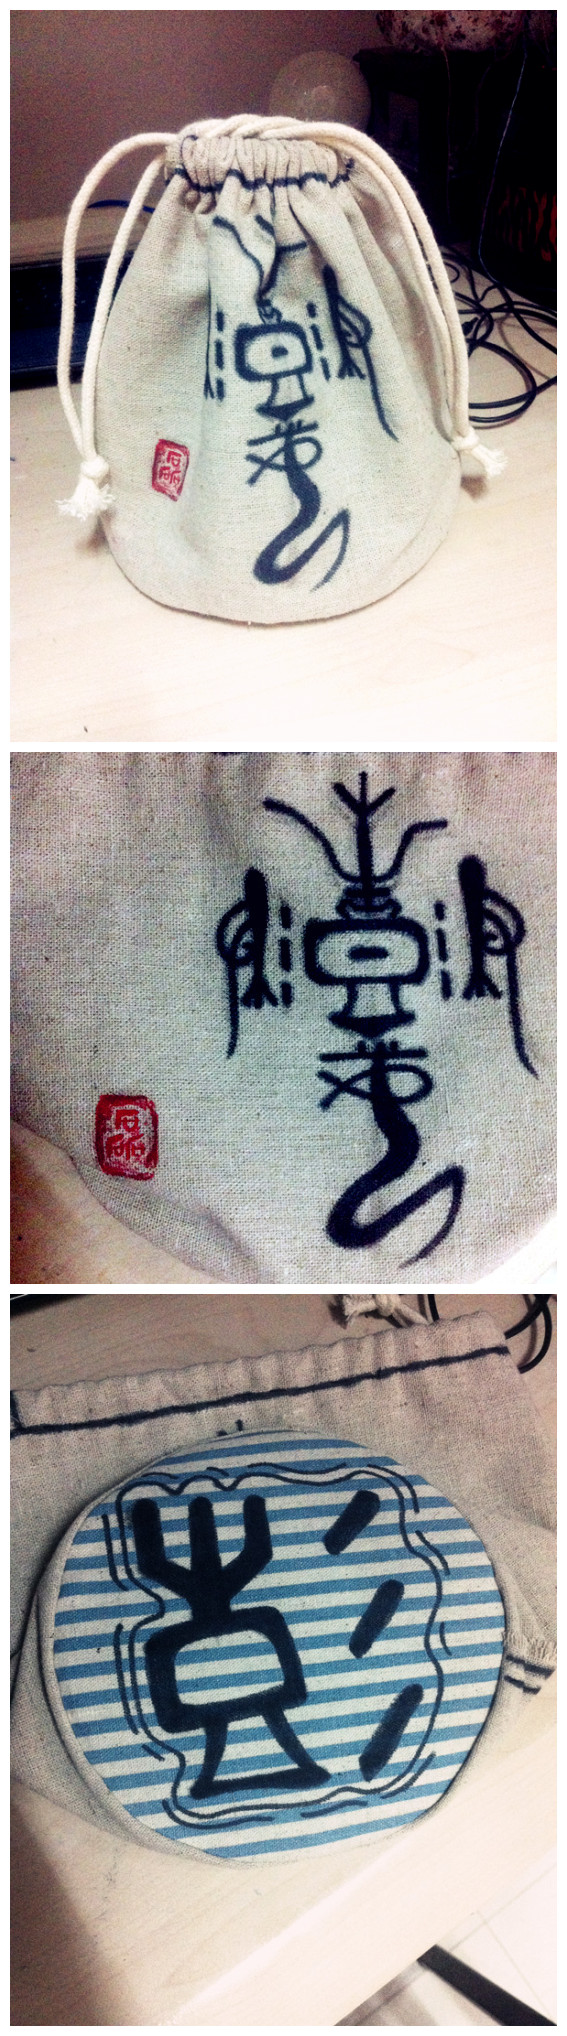 朋友要一个古风的圆底布袋,于是就给他做了这个----彭姓的图腾,印章是